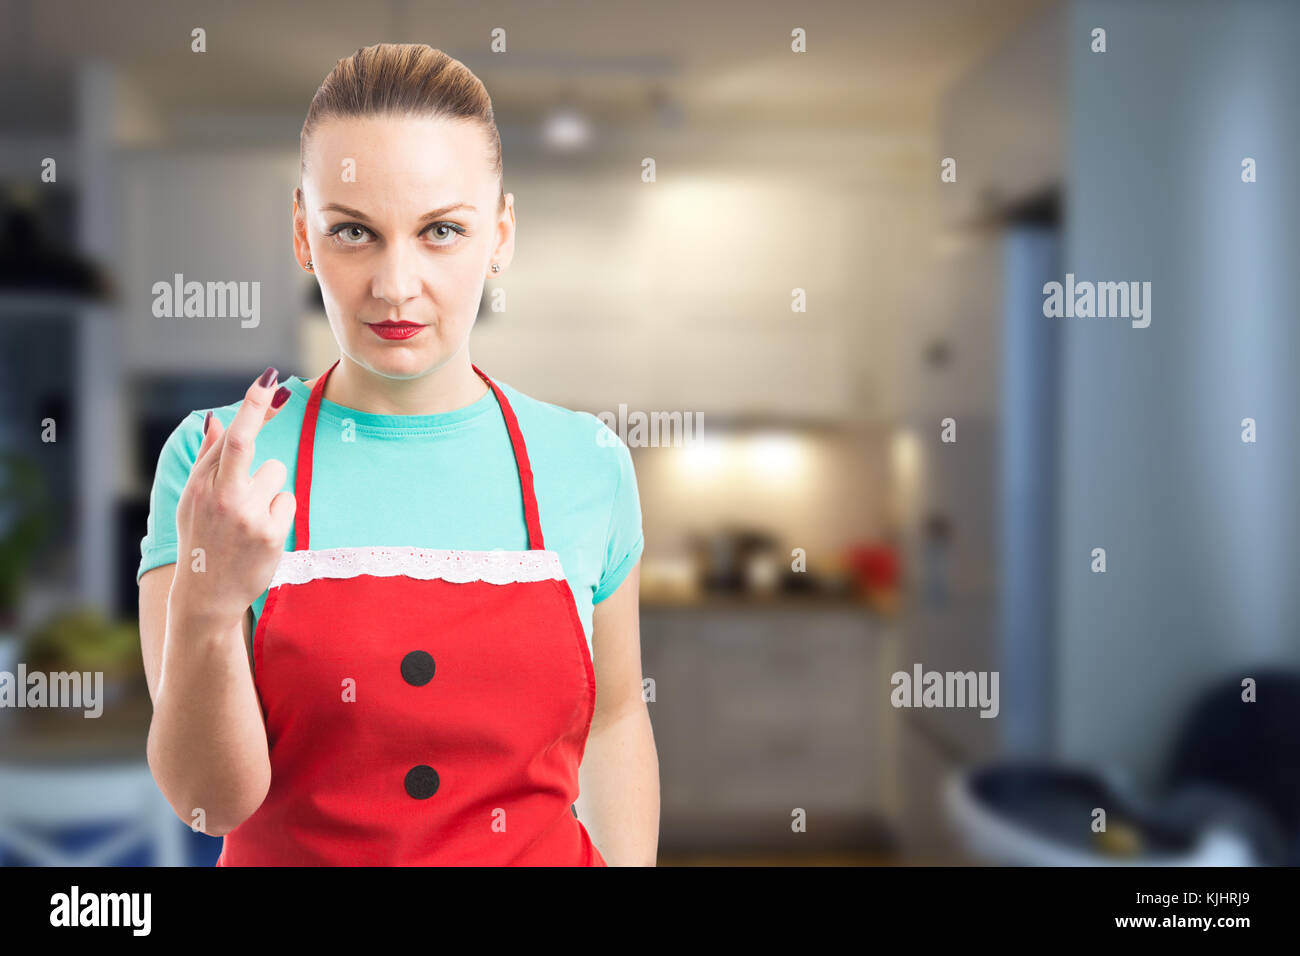 Hausmädchen oder eine Haushälterin, die Pech Geste mit gekreuzten Fingern das Tragen der roten Schürze auf Küche Hintergrund Stockfoto